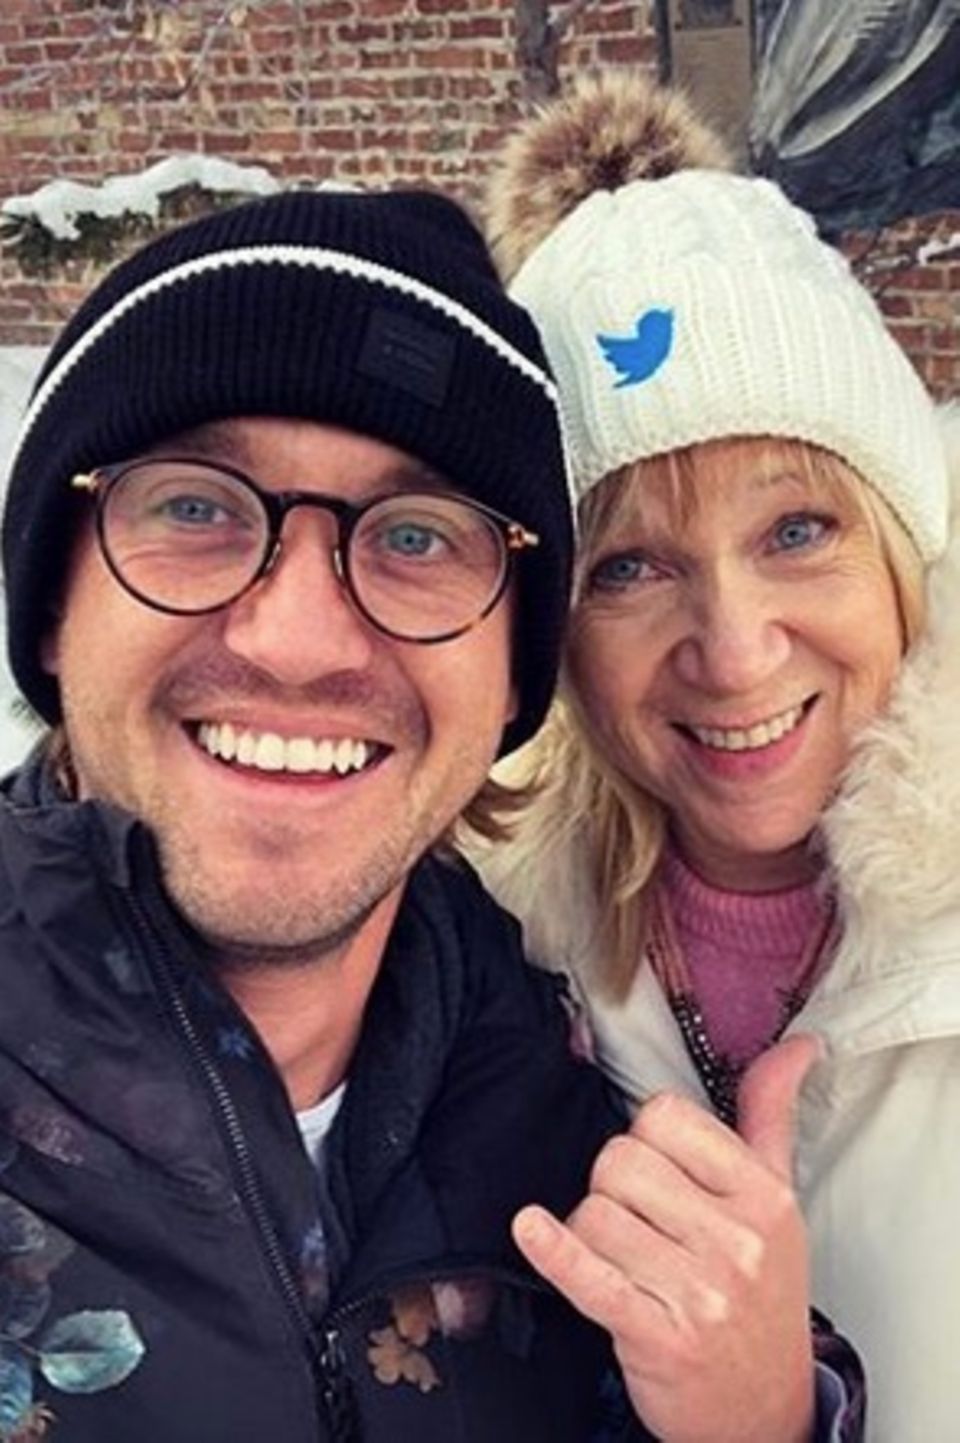 Tom Felton ist mit seiner Mutter Sharon Anstey zum Sundance Film Festival gereist. "Liebt eure Mütter" schreibt der smarte Schauspieler bei Instagram.  